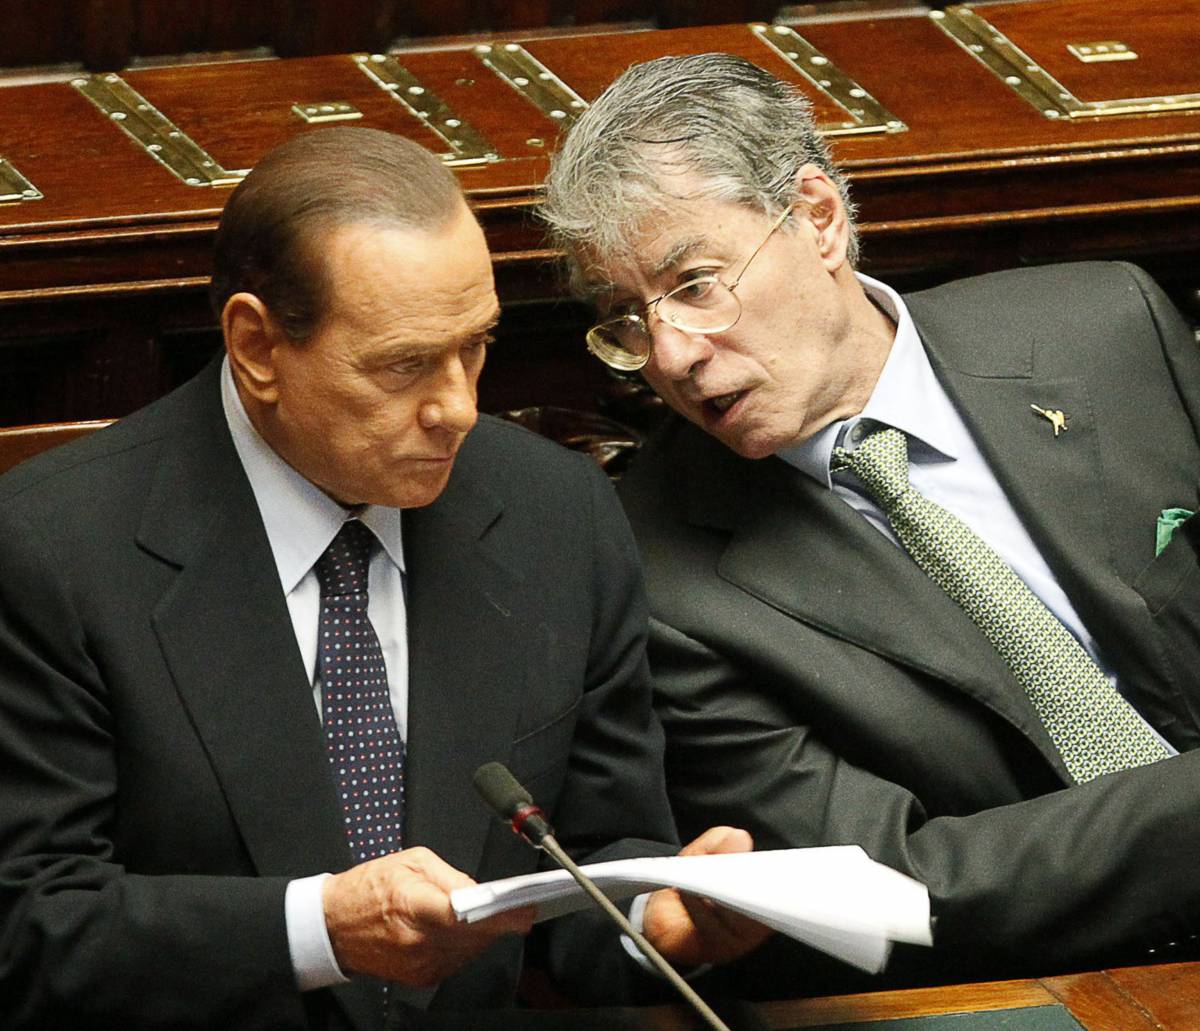 La proposta di Berlusconi: "Se vinco, vicepremier leghista"